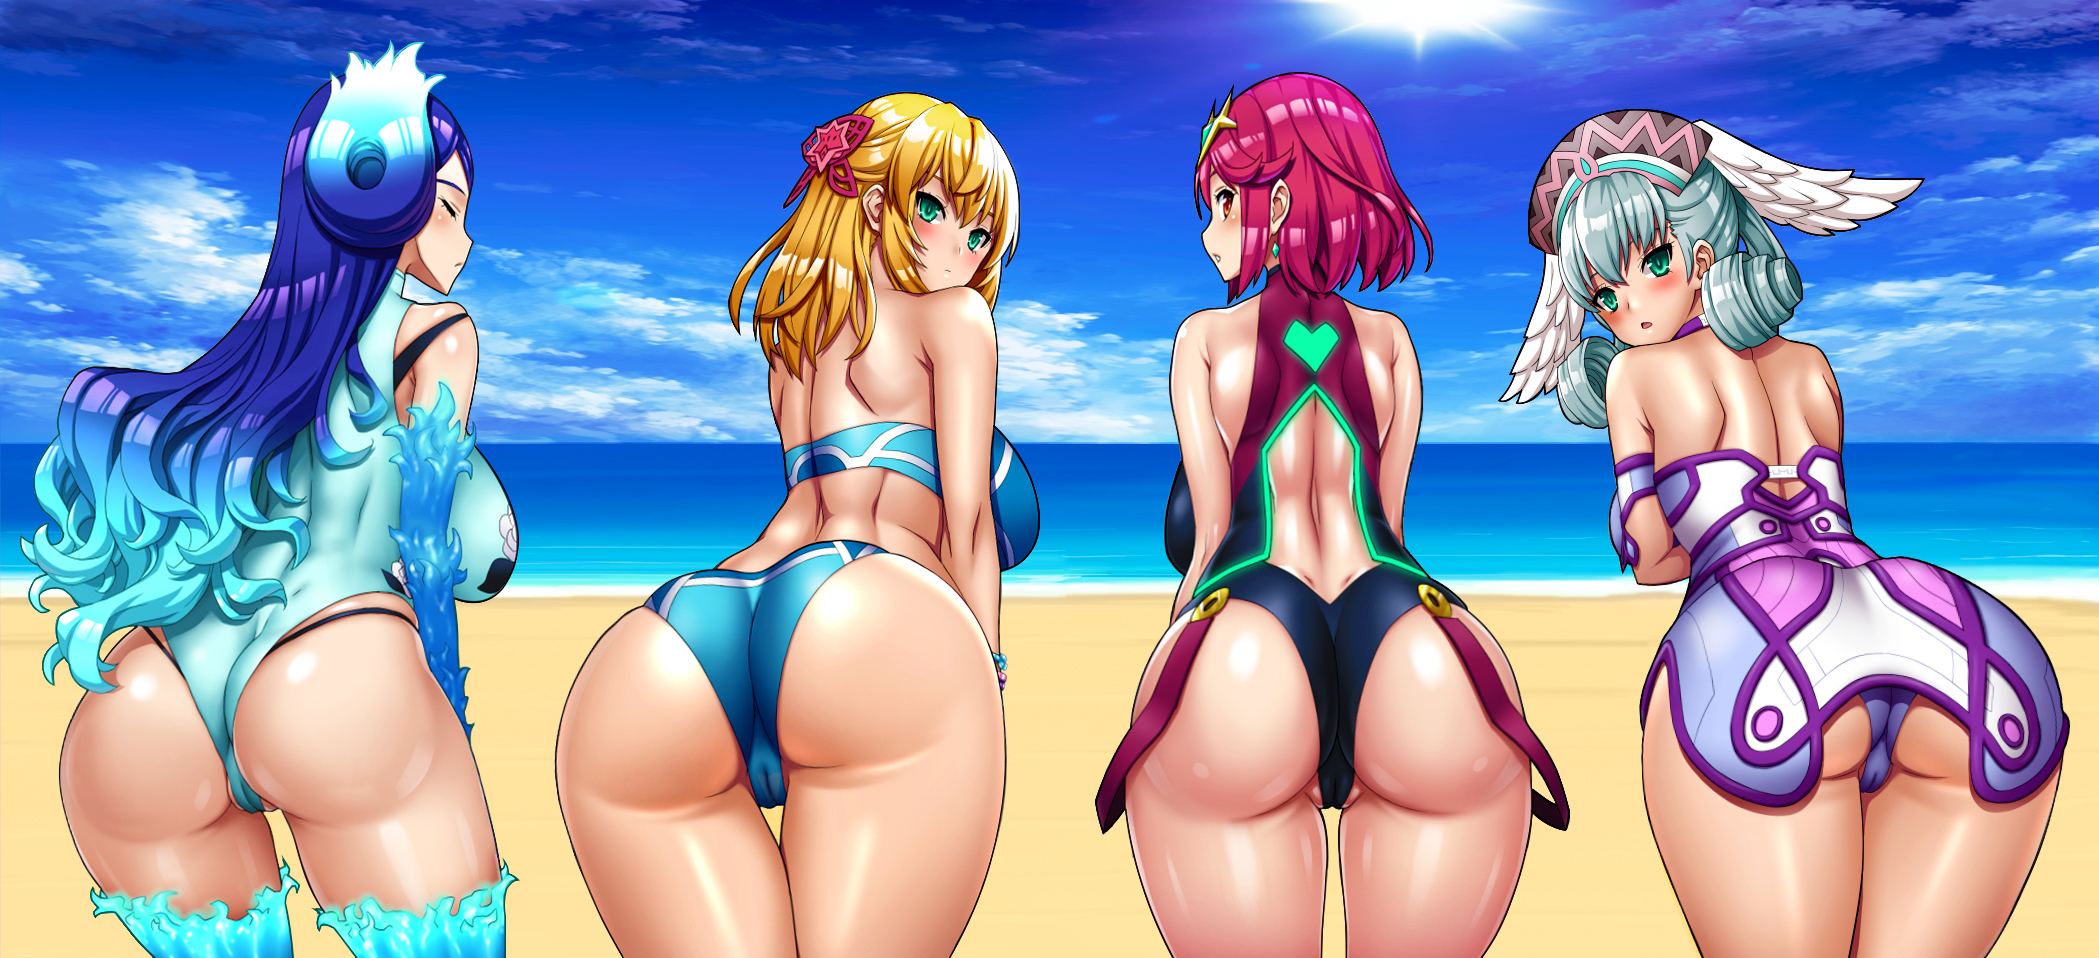 Fiora, Pyra, Melia & Brighid on the Beach (Onomesin) [Xenoblade Chronicles 2]